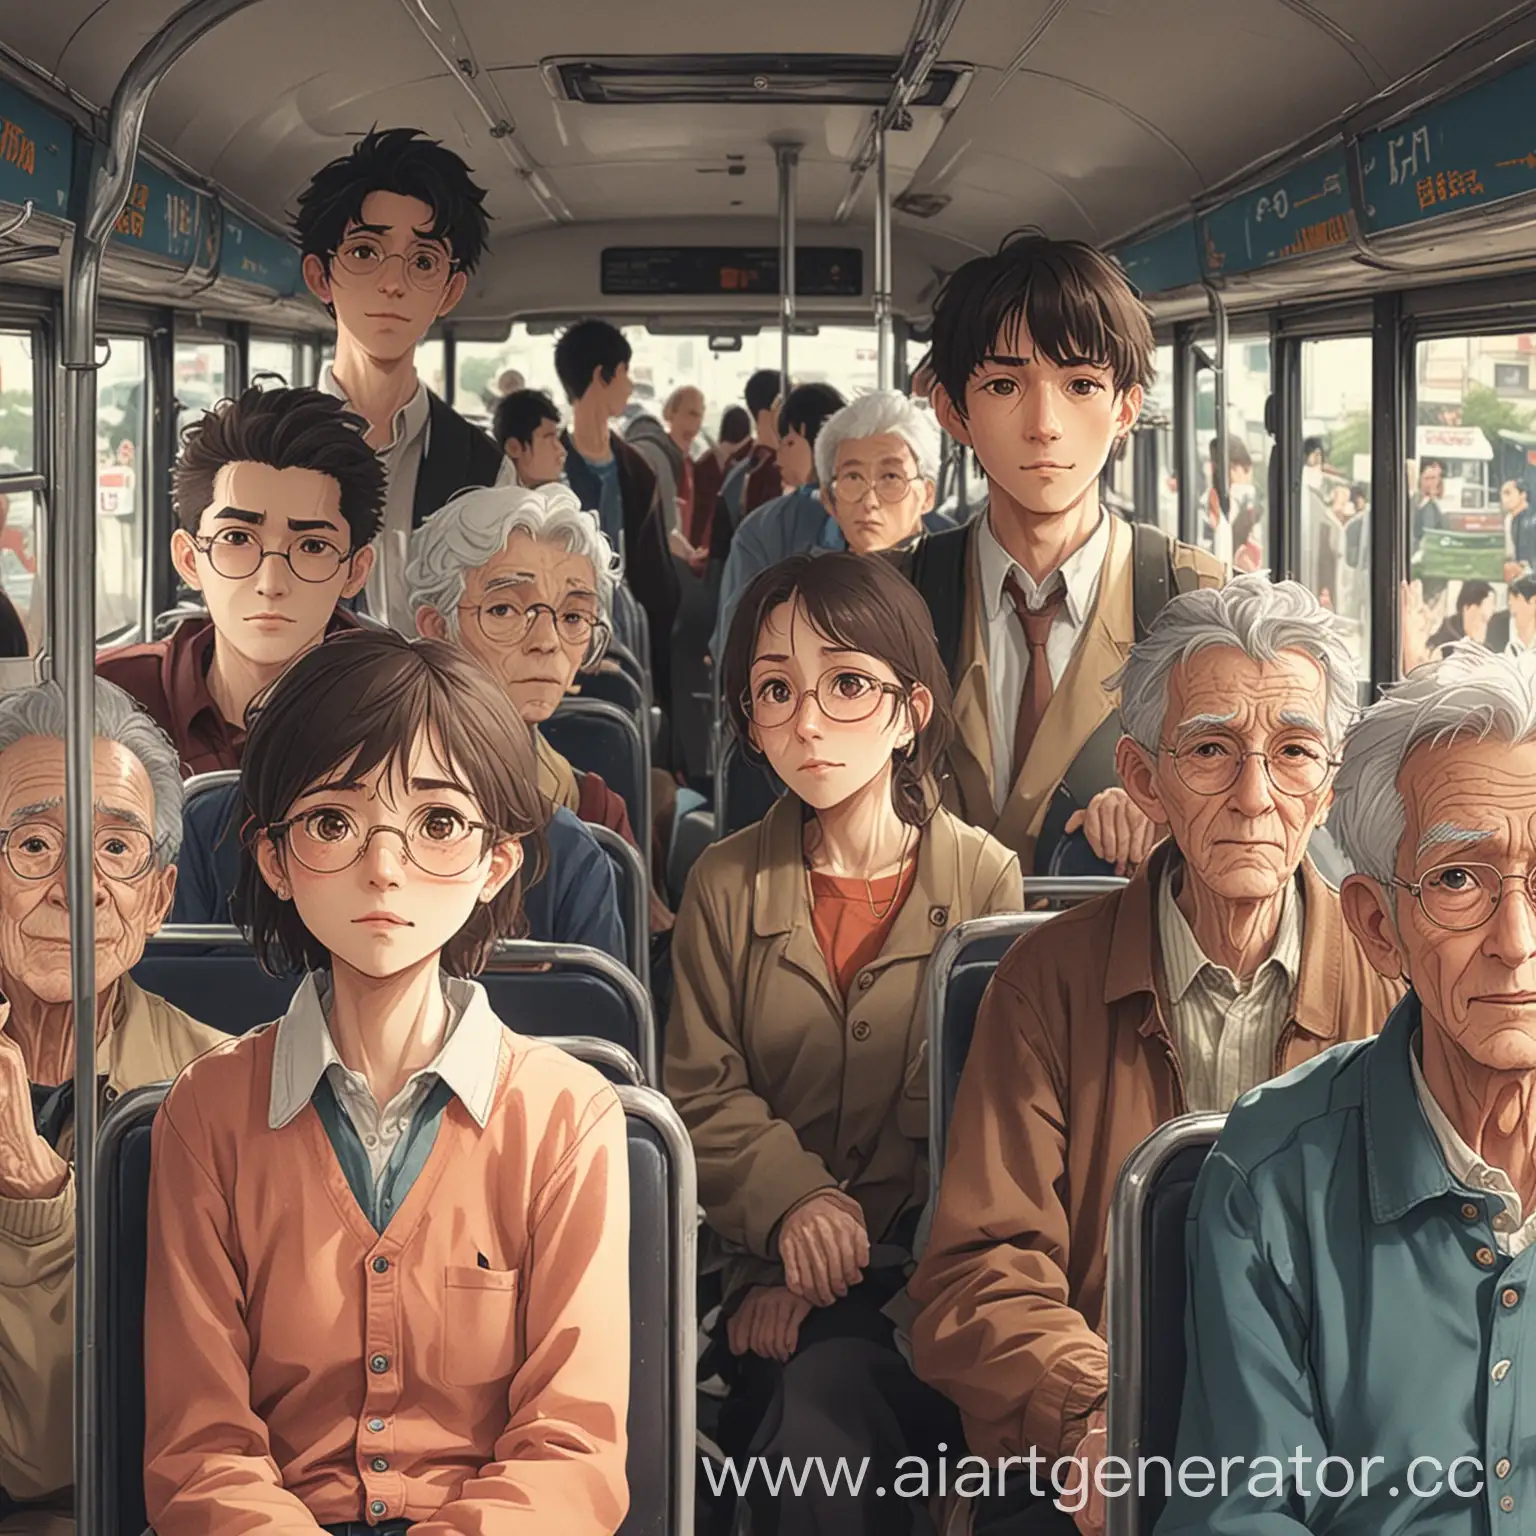 молодой человек в автобусе полный стариков в стиле аниме
